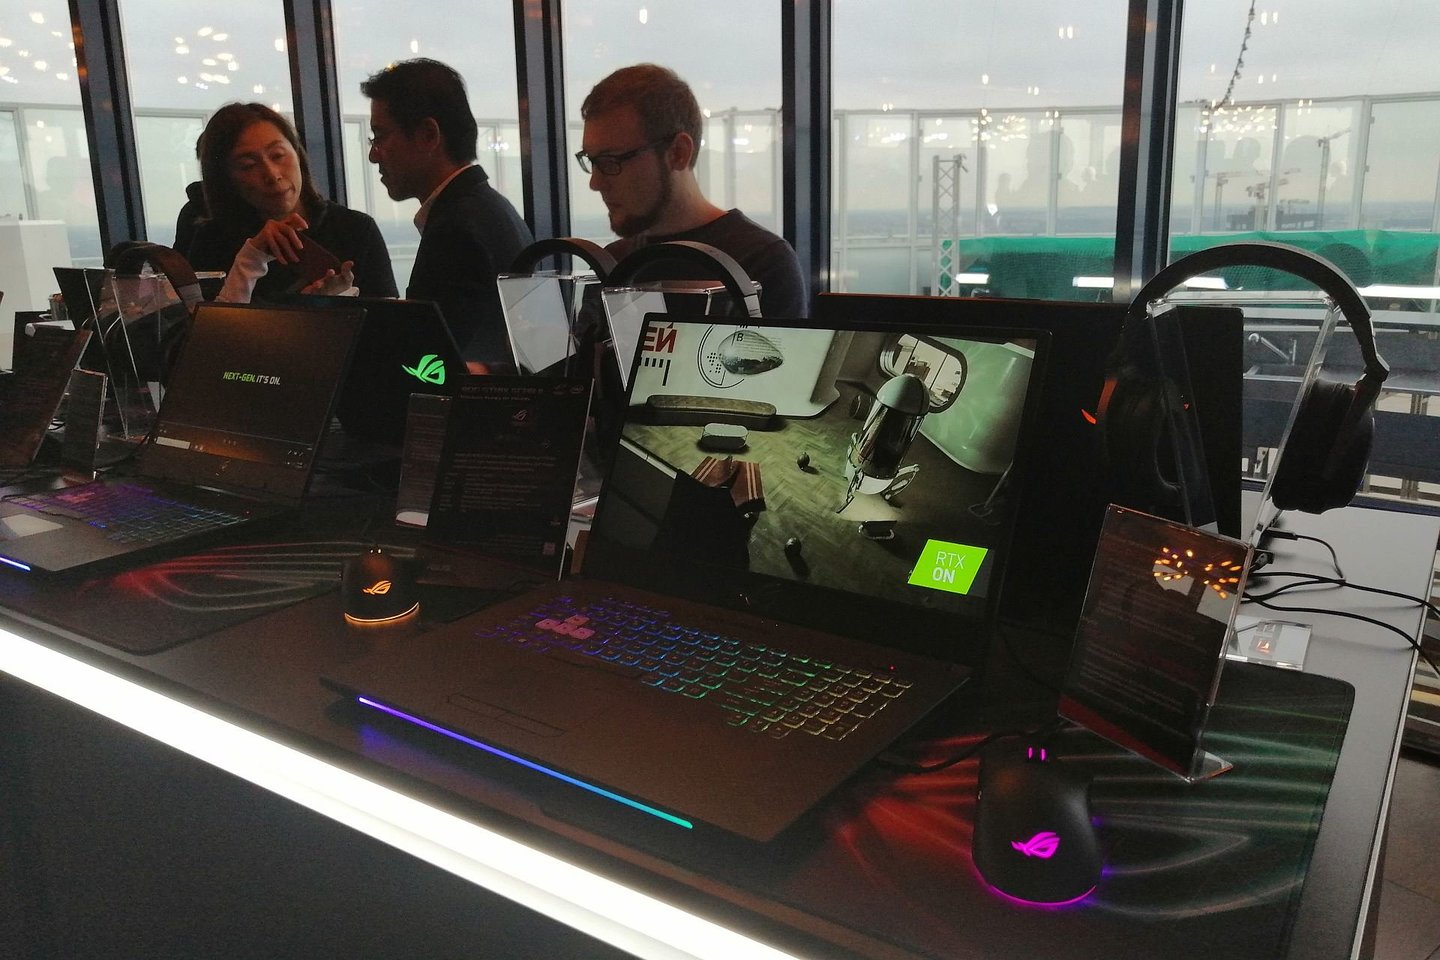  Ketvirtadienį Varšuvoje buvo pristatyti naujieji ASUS kompiuteriai.<br> B. Budrytės nuotr.